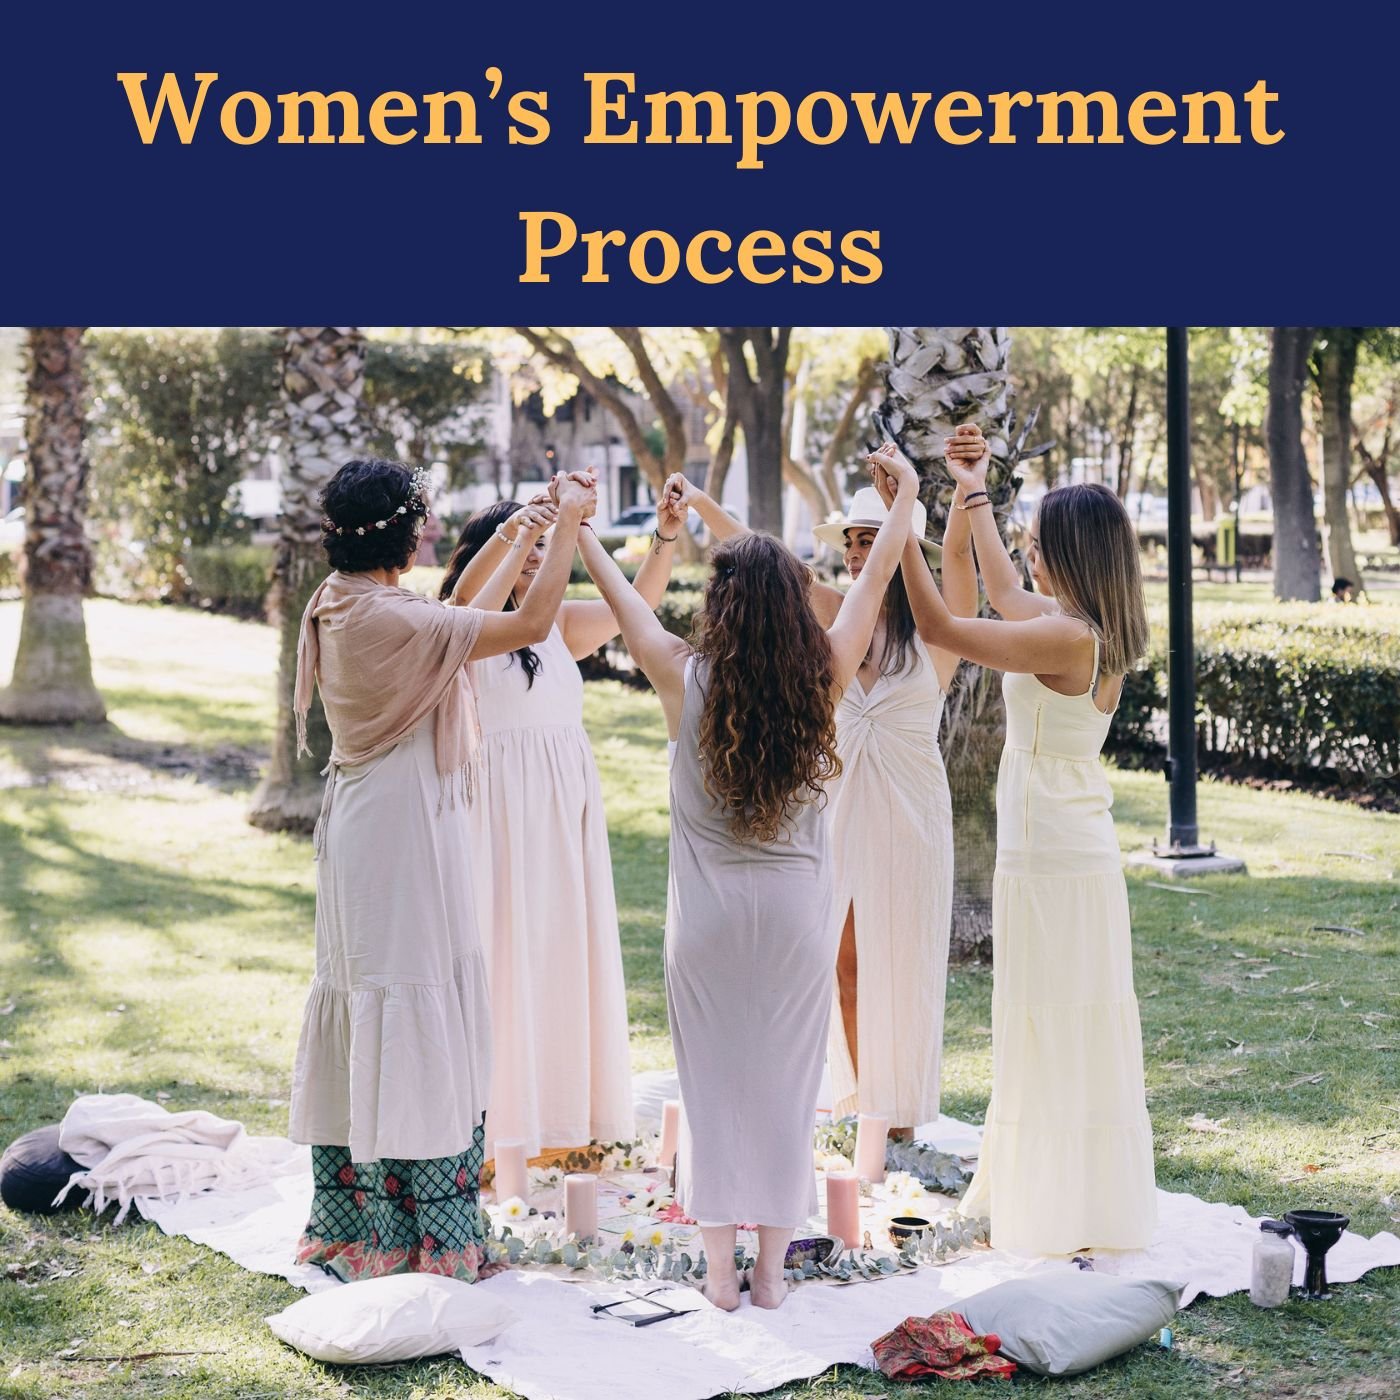 Lisa Womens Empowerment.jpg